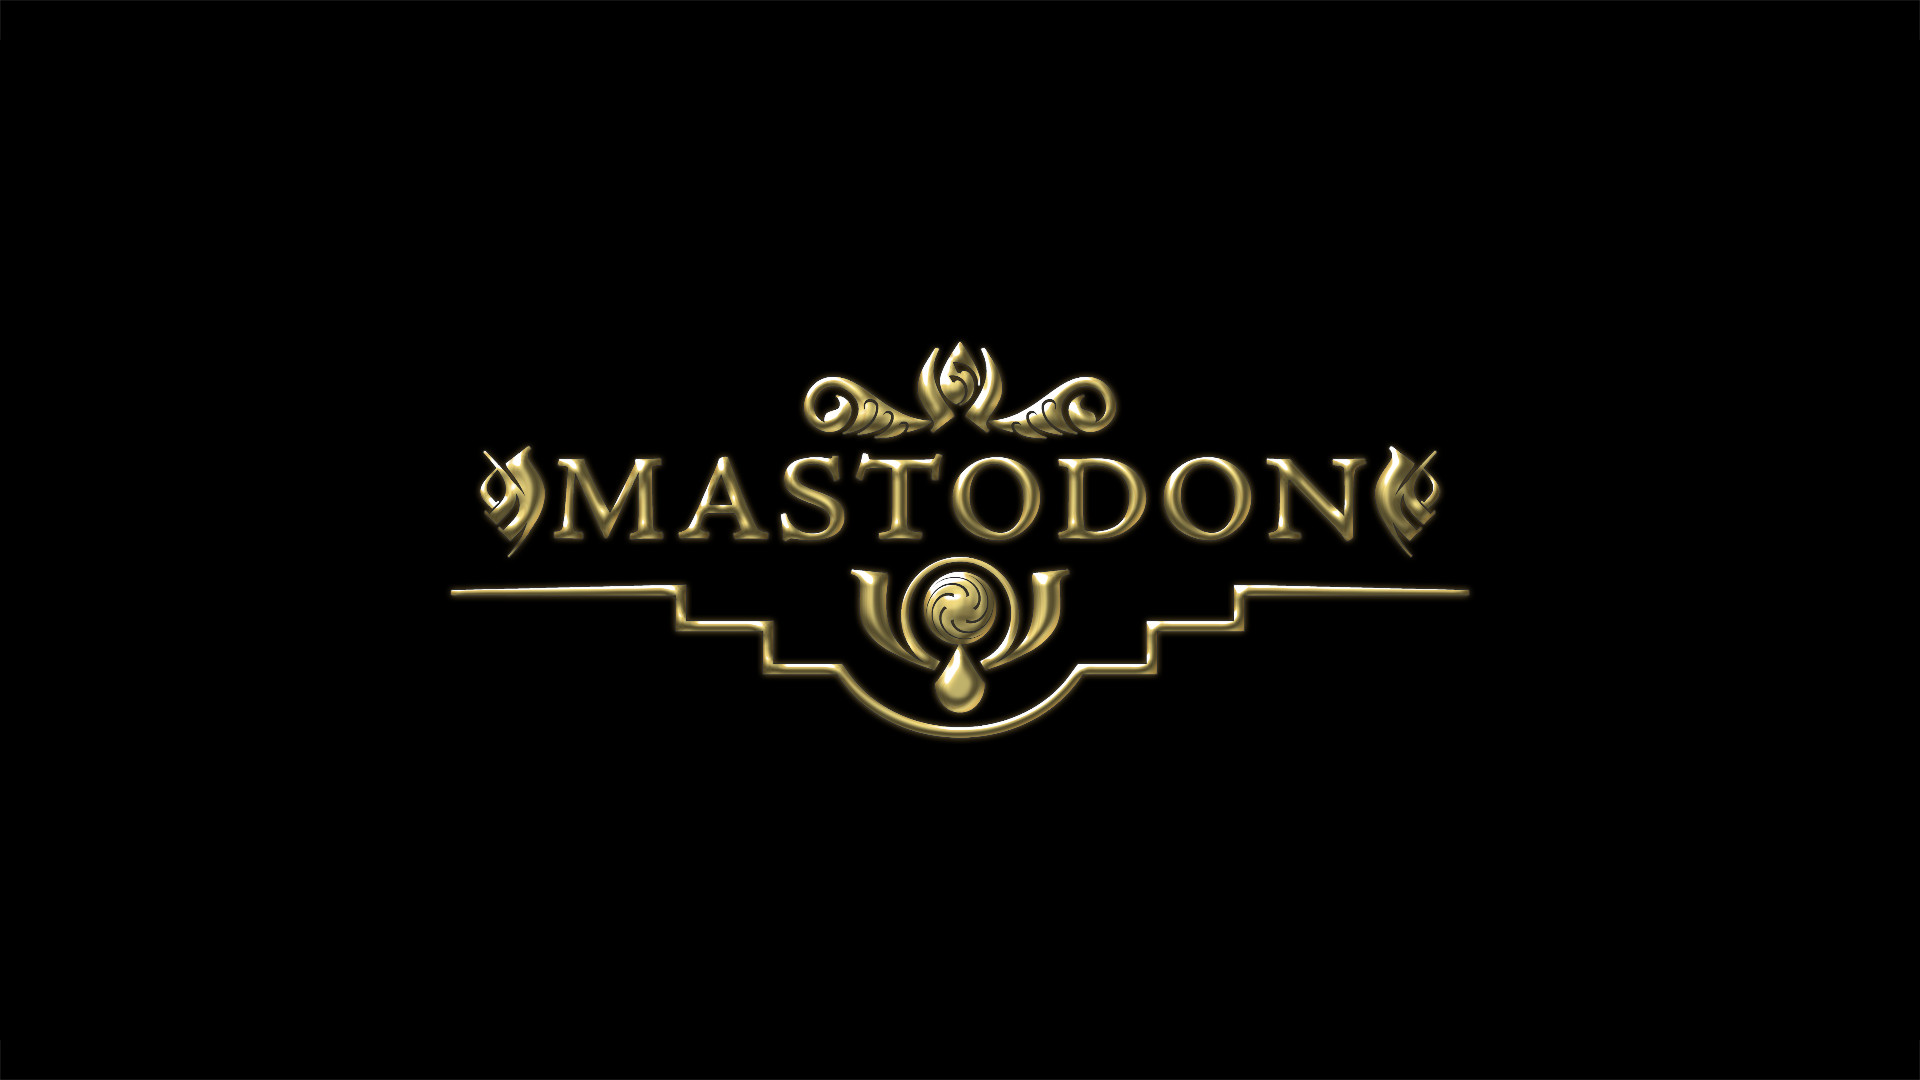 Mastodon Wallpaper By Woody029